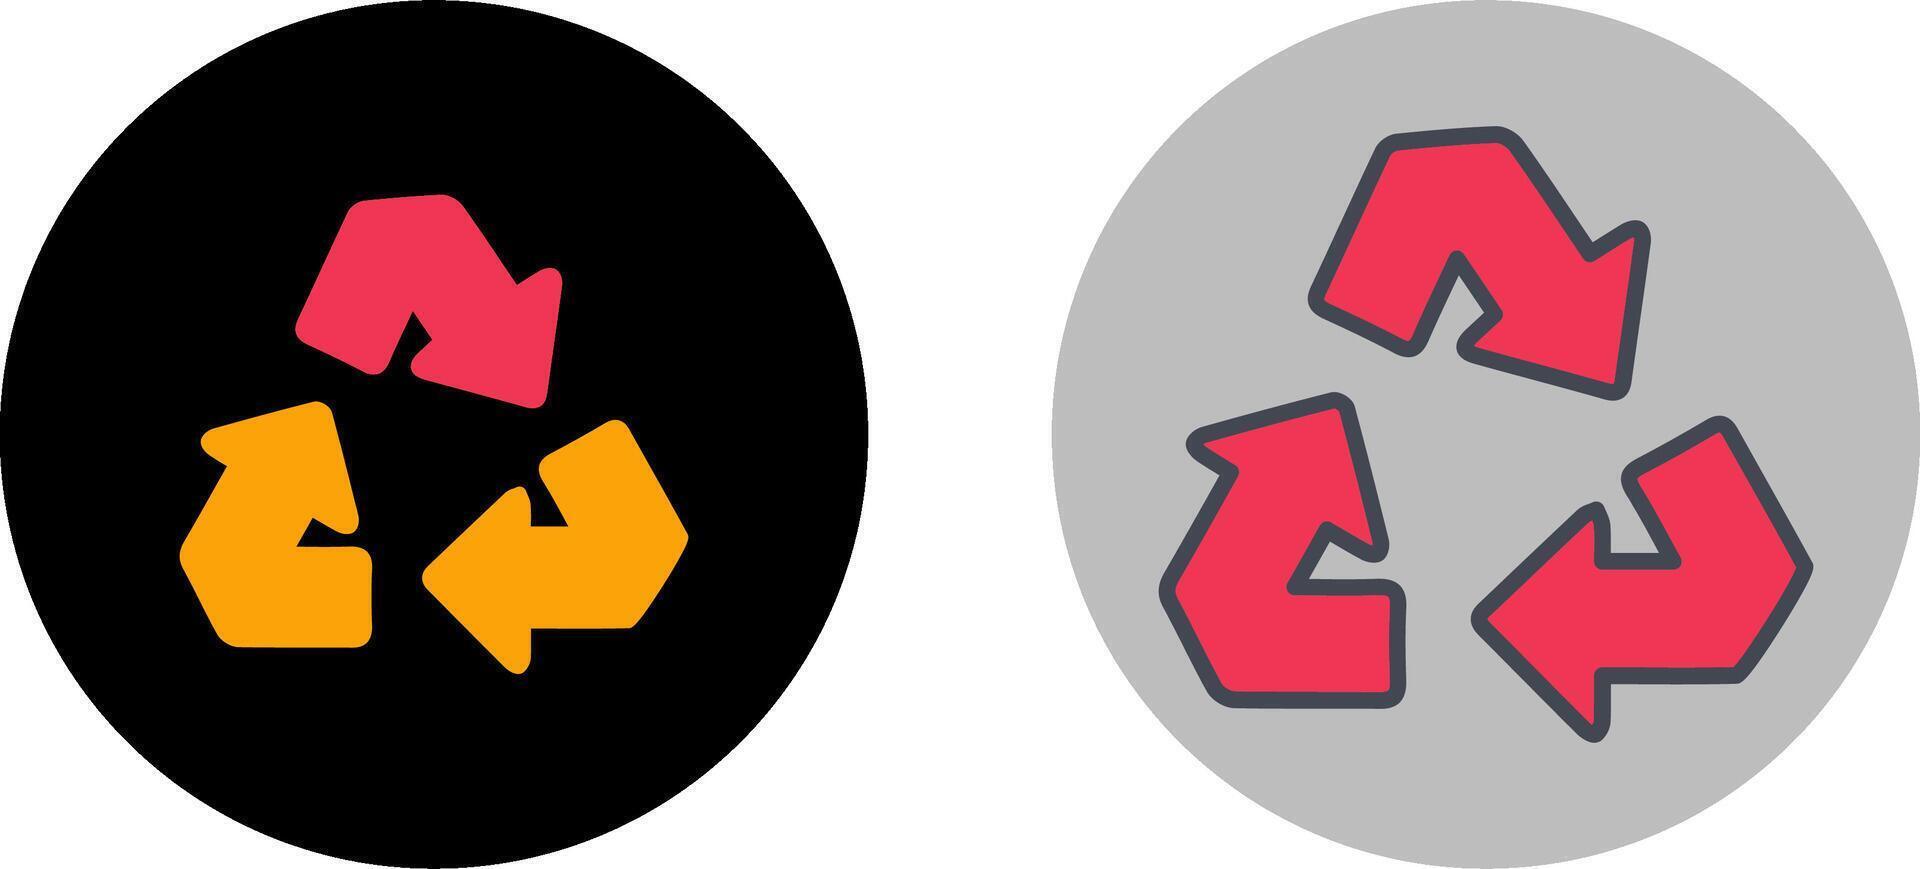 Recycle Arrow Icon Design vector